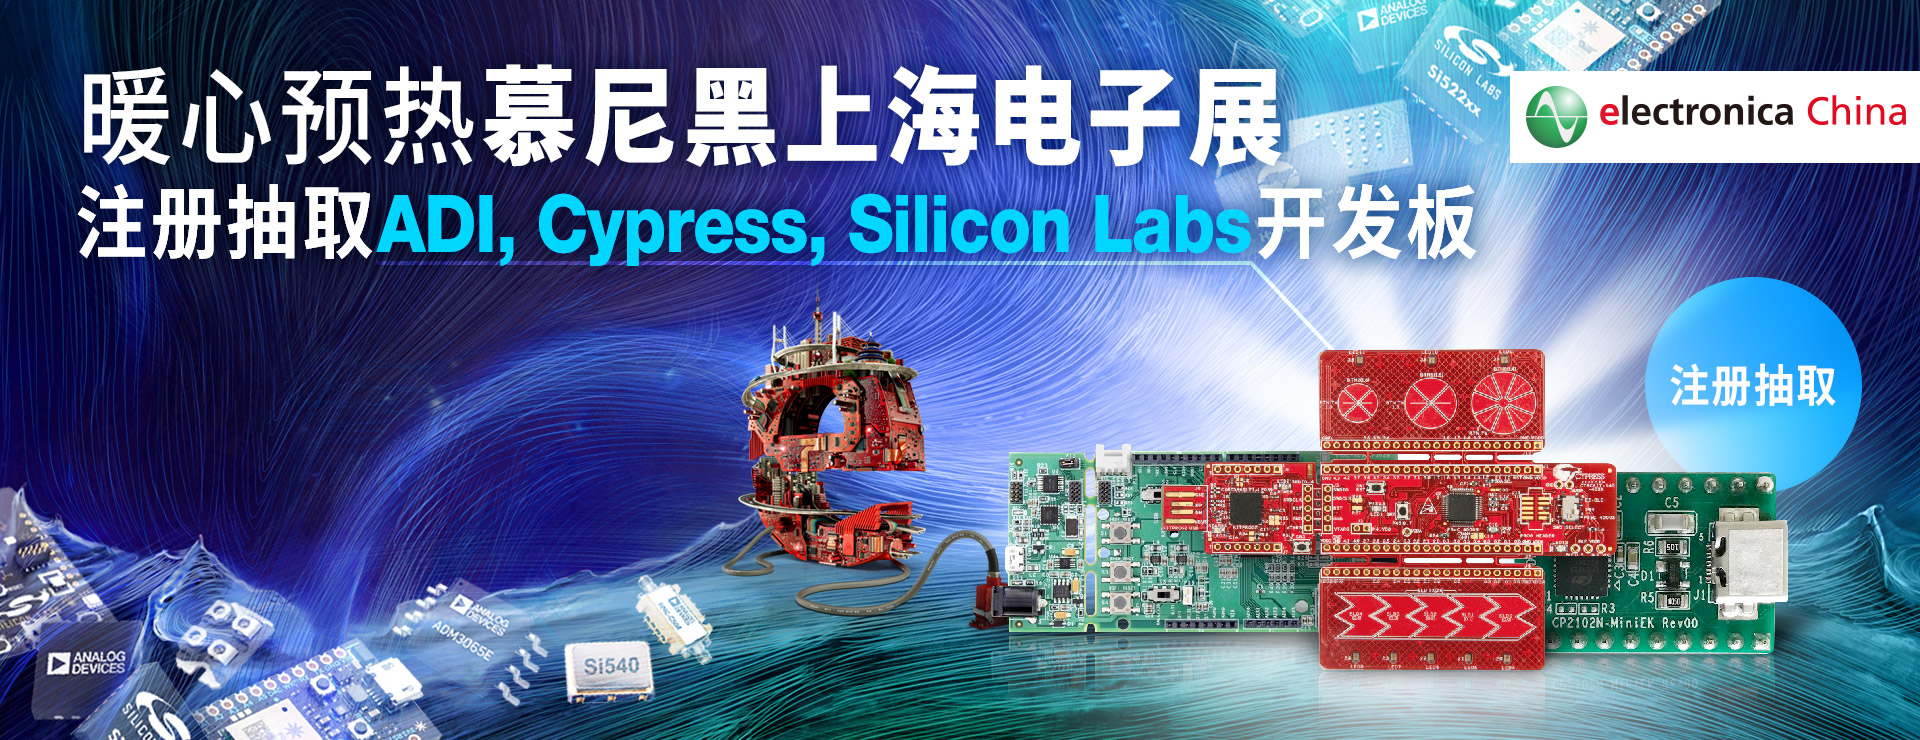 暖心预热慕尼黑上海电子展 - 注册抽取ADI, Cypress, Silicon Labs开发板